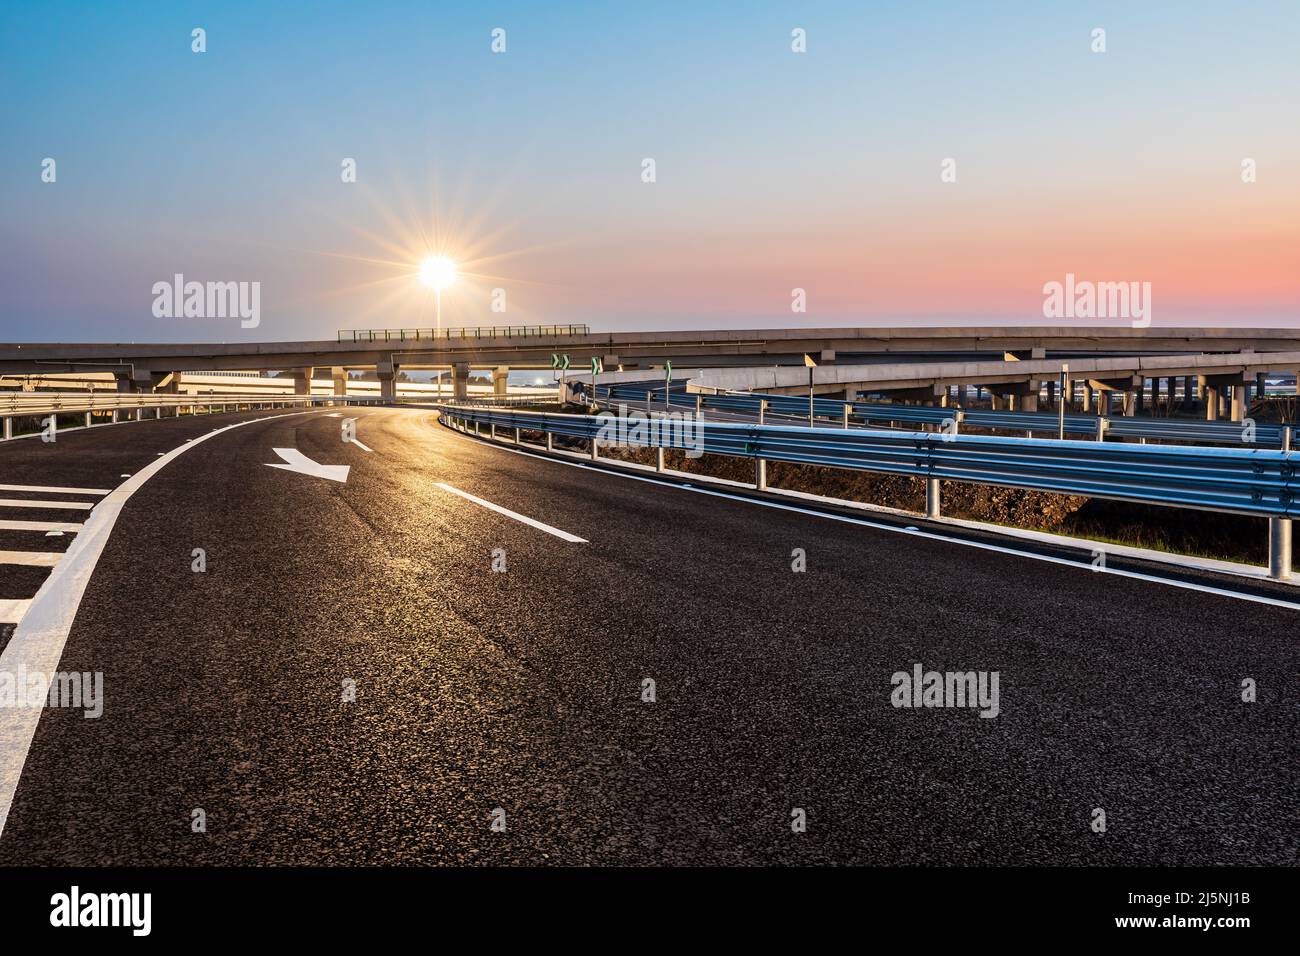 Autopista de asfalto vacía y luces de calle con hermoso cielo al atardecer Foto de stock